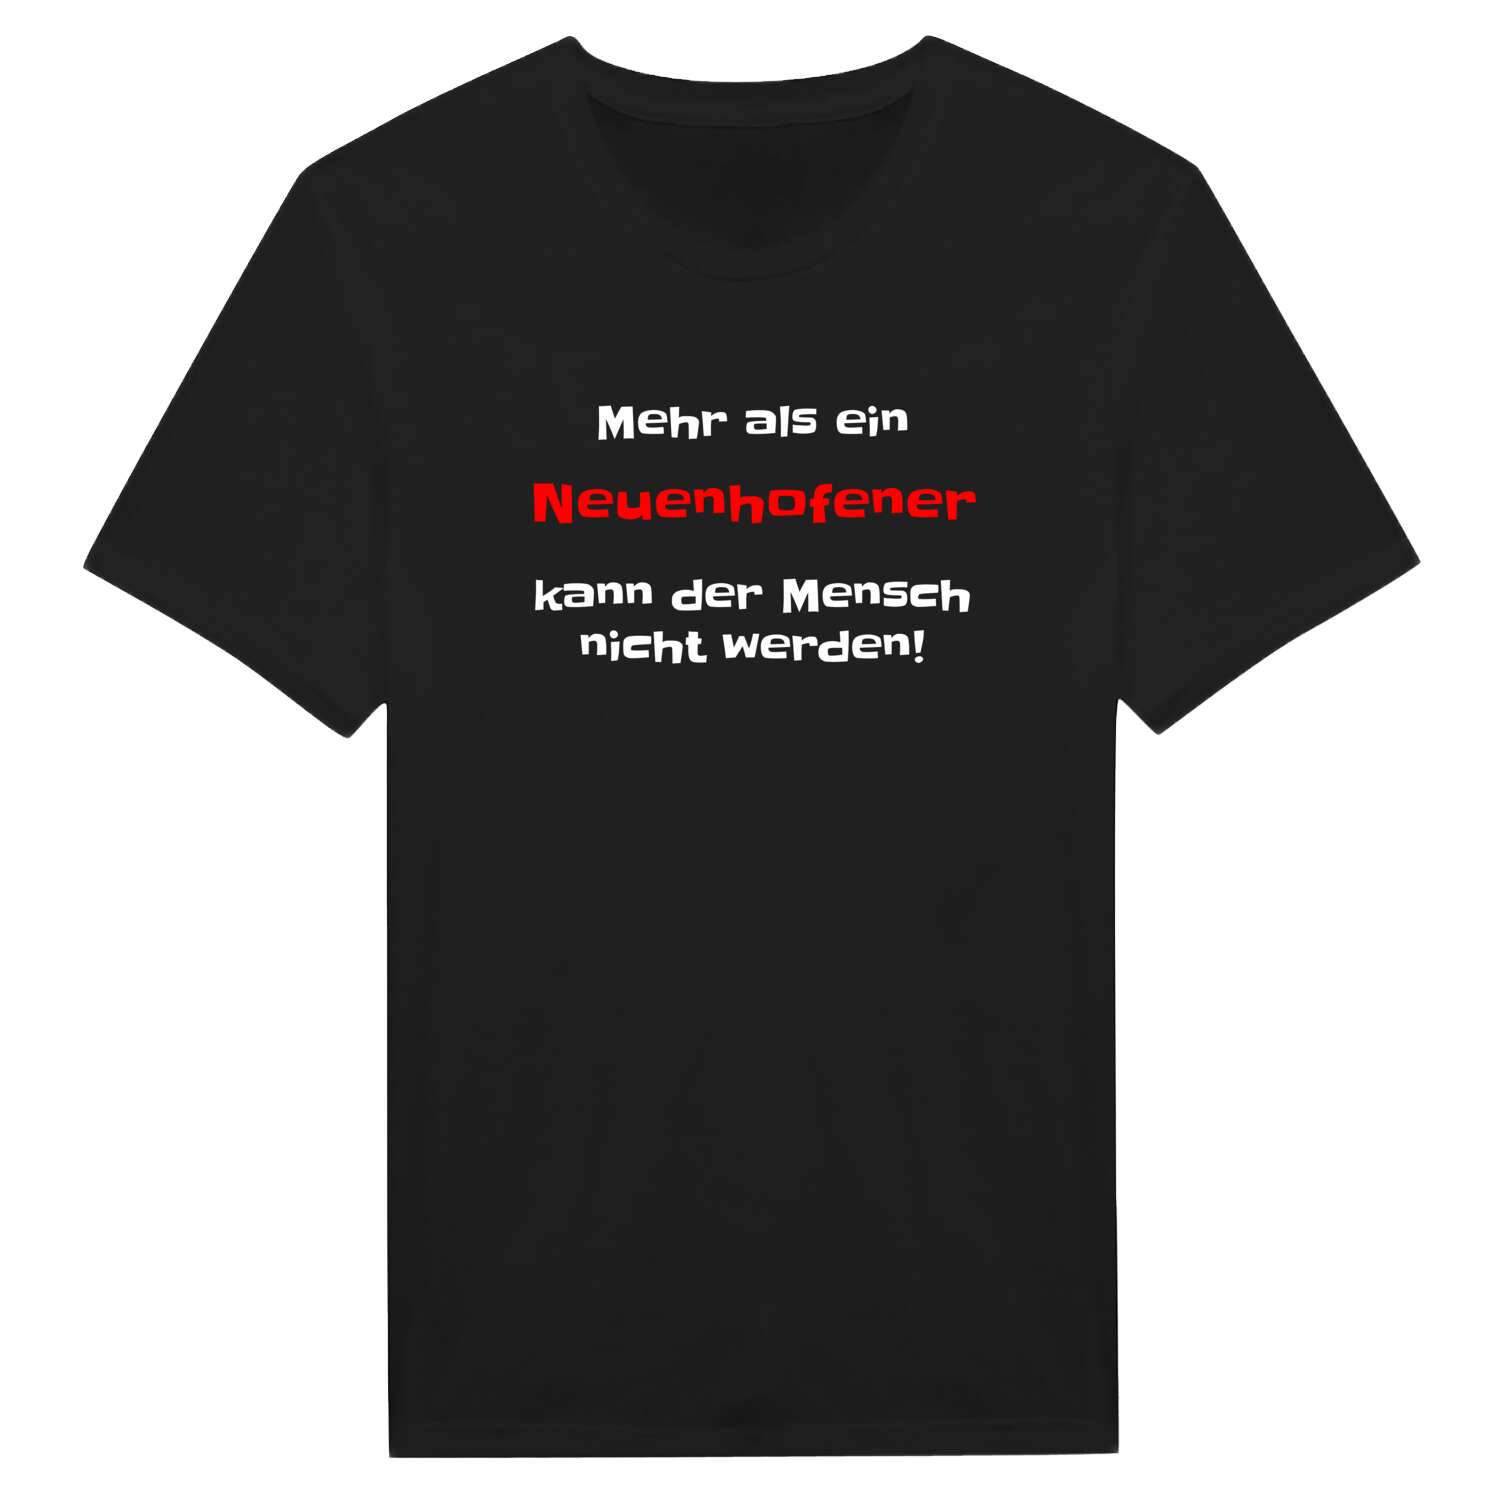 Neuenhofe T-Shirt »Mehr als ein«